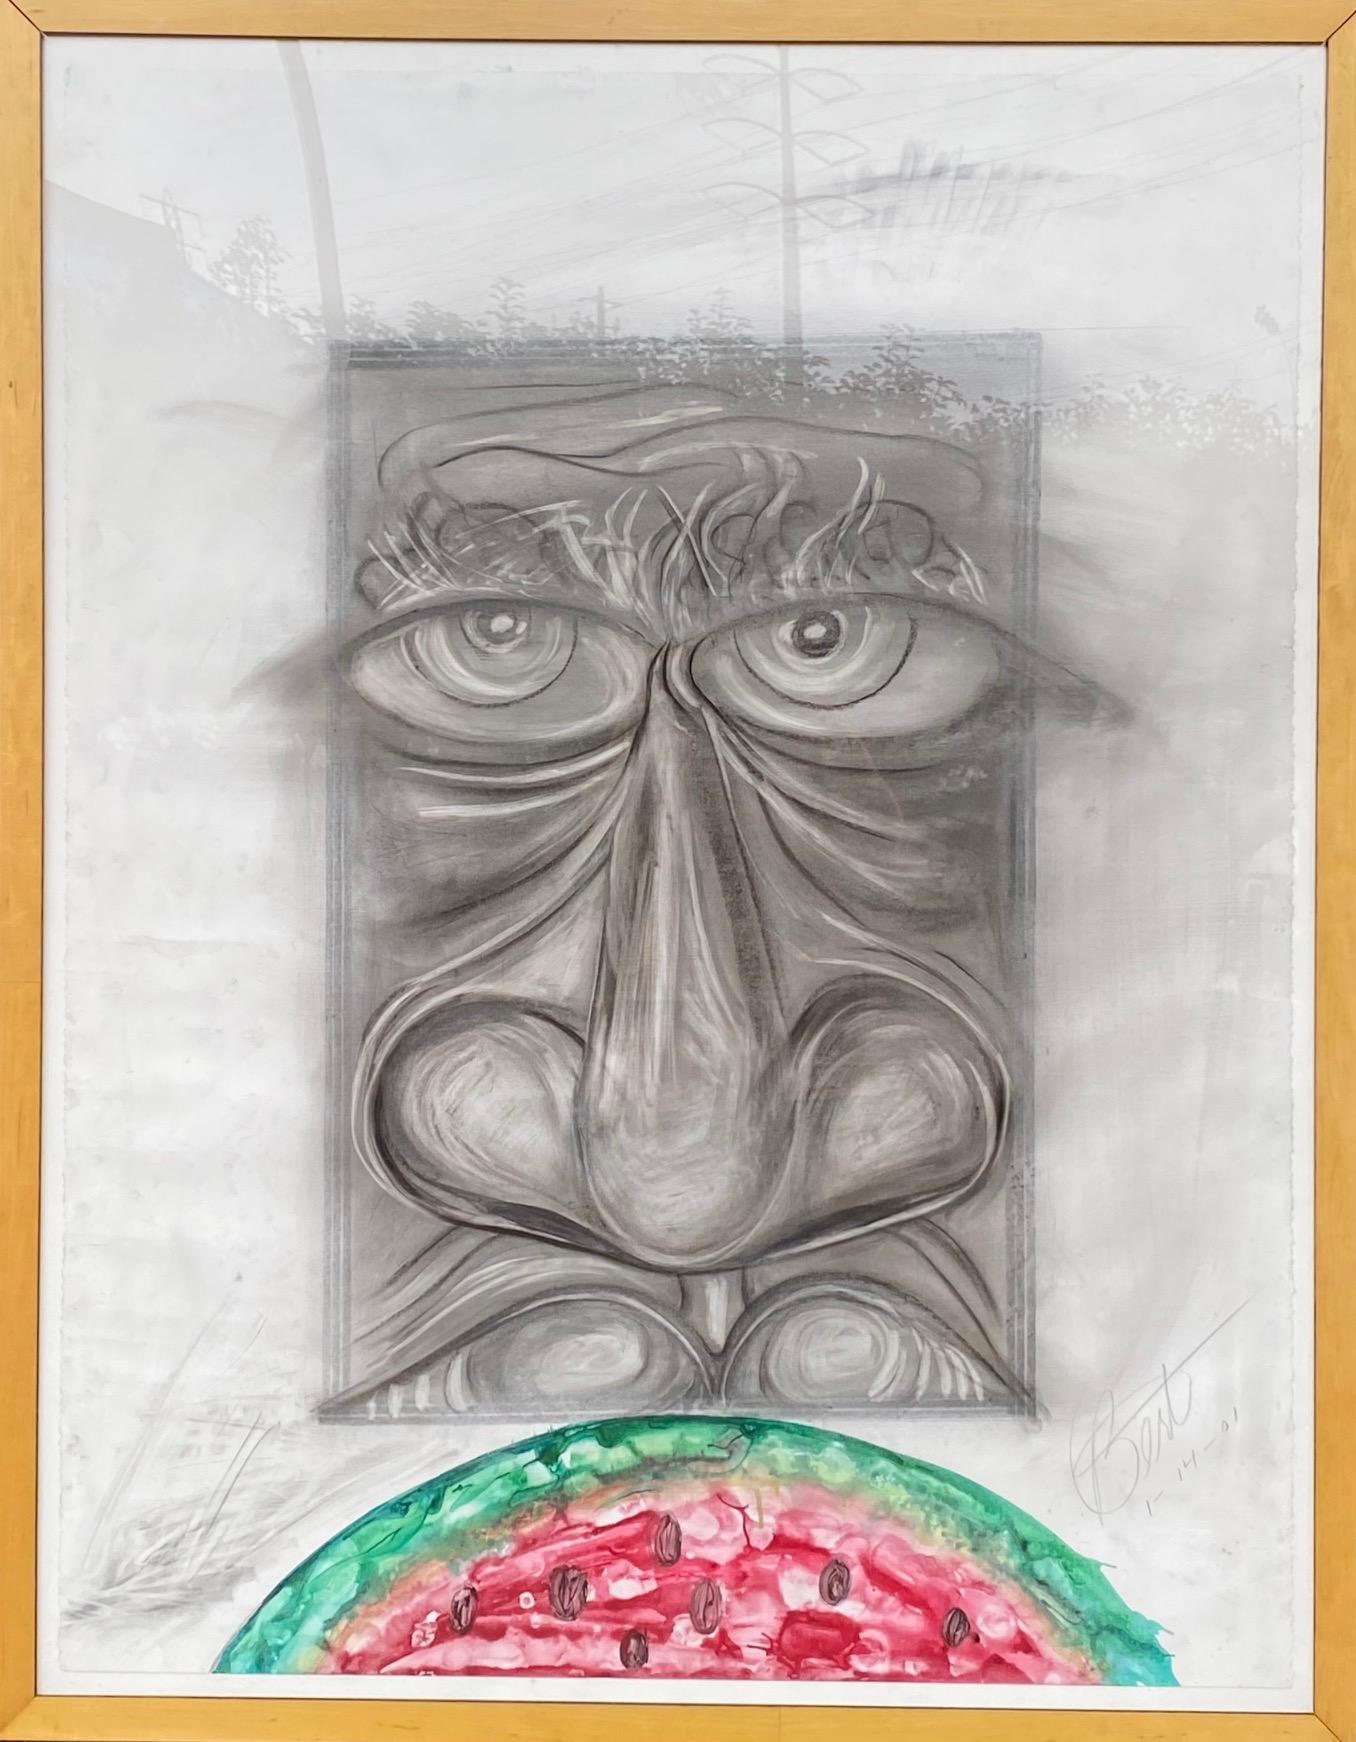 Cette œuvre porte la représentation achromatique frappante d'un visage, contrastée par une section vibrante et colorée de pastèque. La simplicité et la légèreté de la pastèque contribuent à compenser le caractère émouvant de la structure du visage.